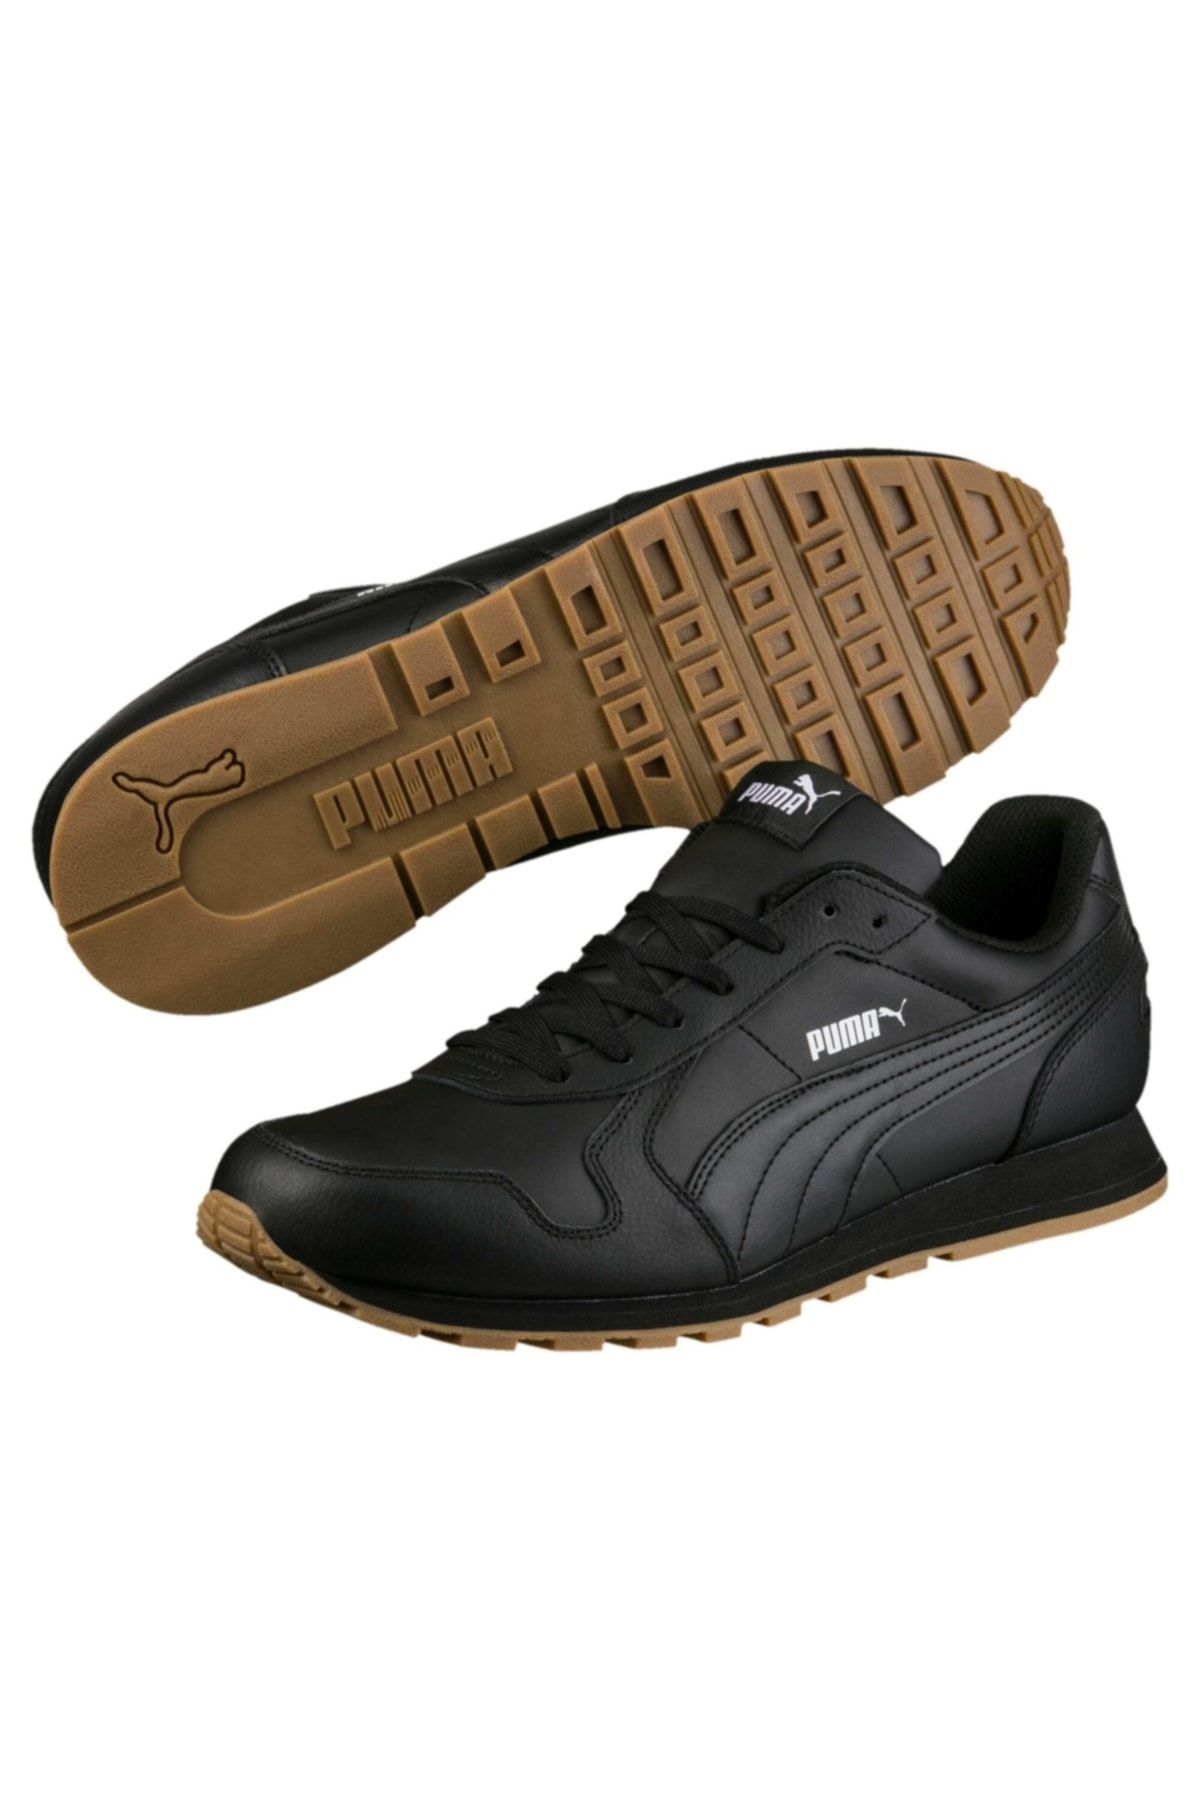 Puma Unisex Siyah Koşu Ayakkabısı - St Runner Full L Black- Black - 35913008